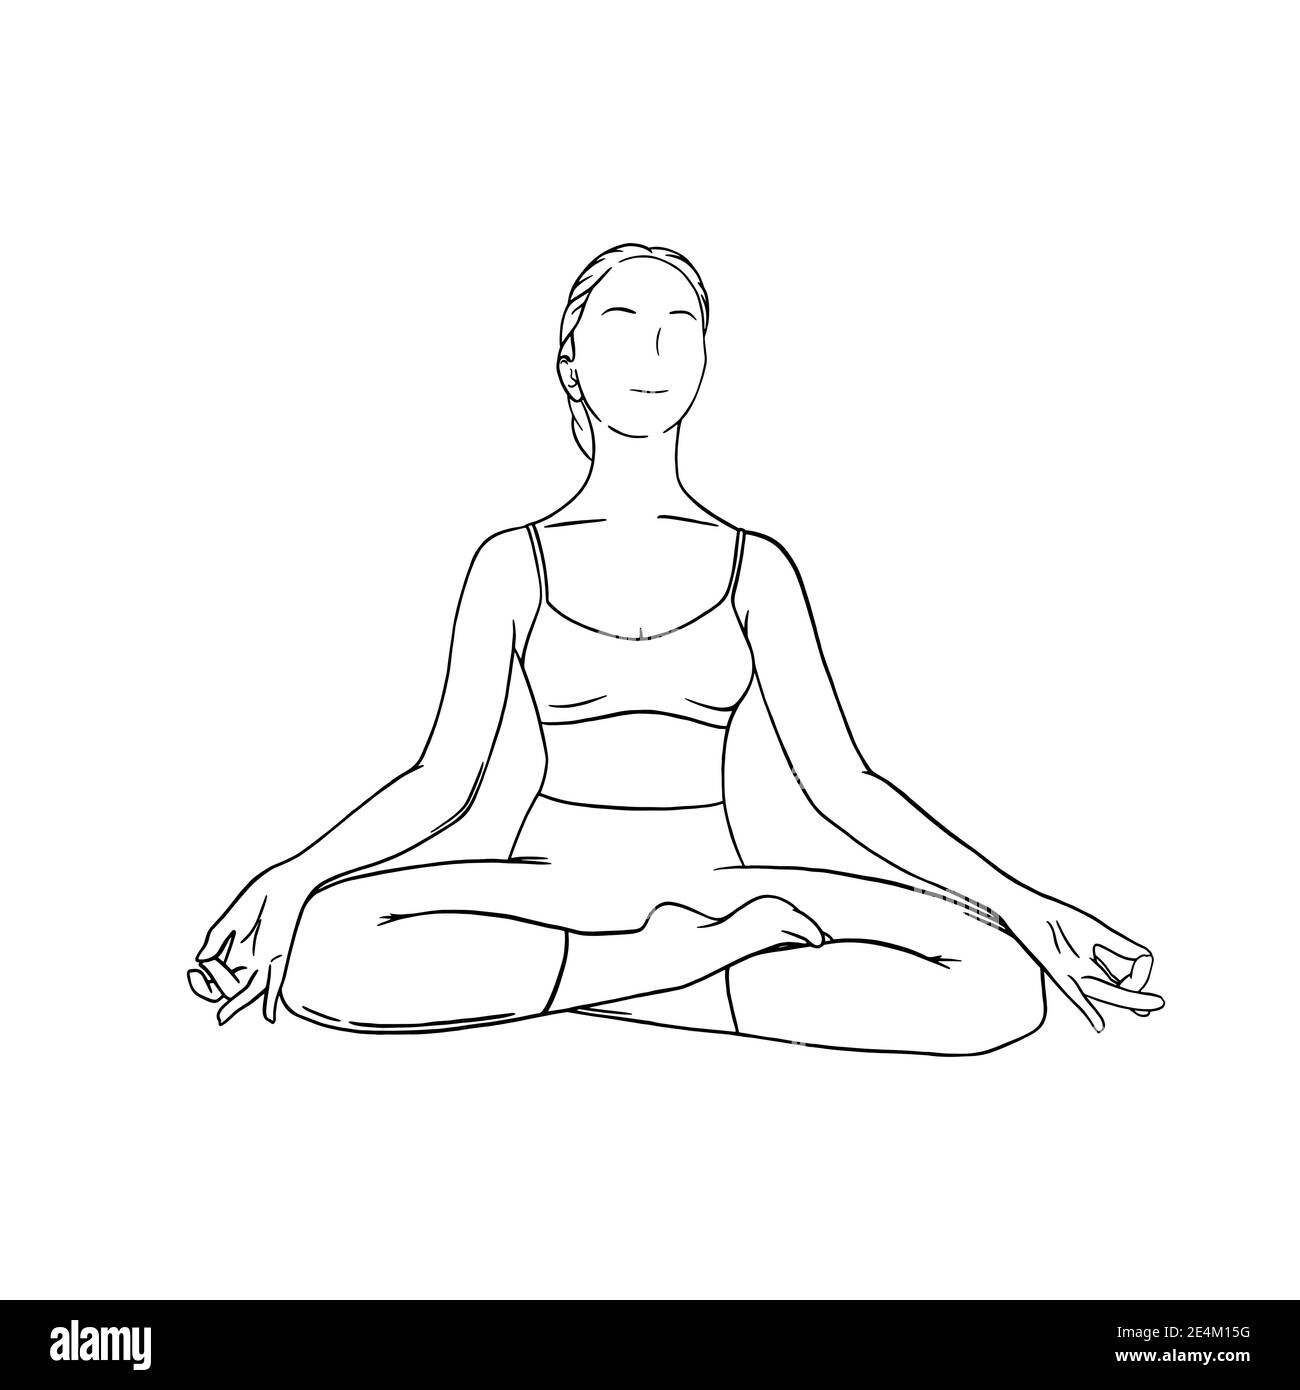 Méditation de yoga dans siddhasana. OM méditation pour la relaxation du corps et l'harmonie d'esprit. Illustration vectorielle gravée isolée sur fond blanc Illustration de Vecteur